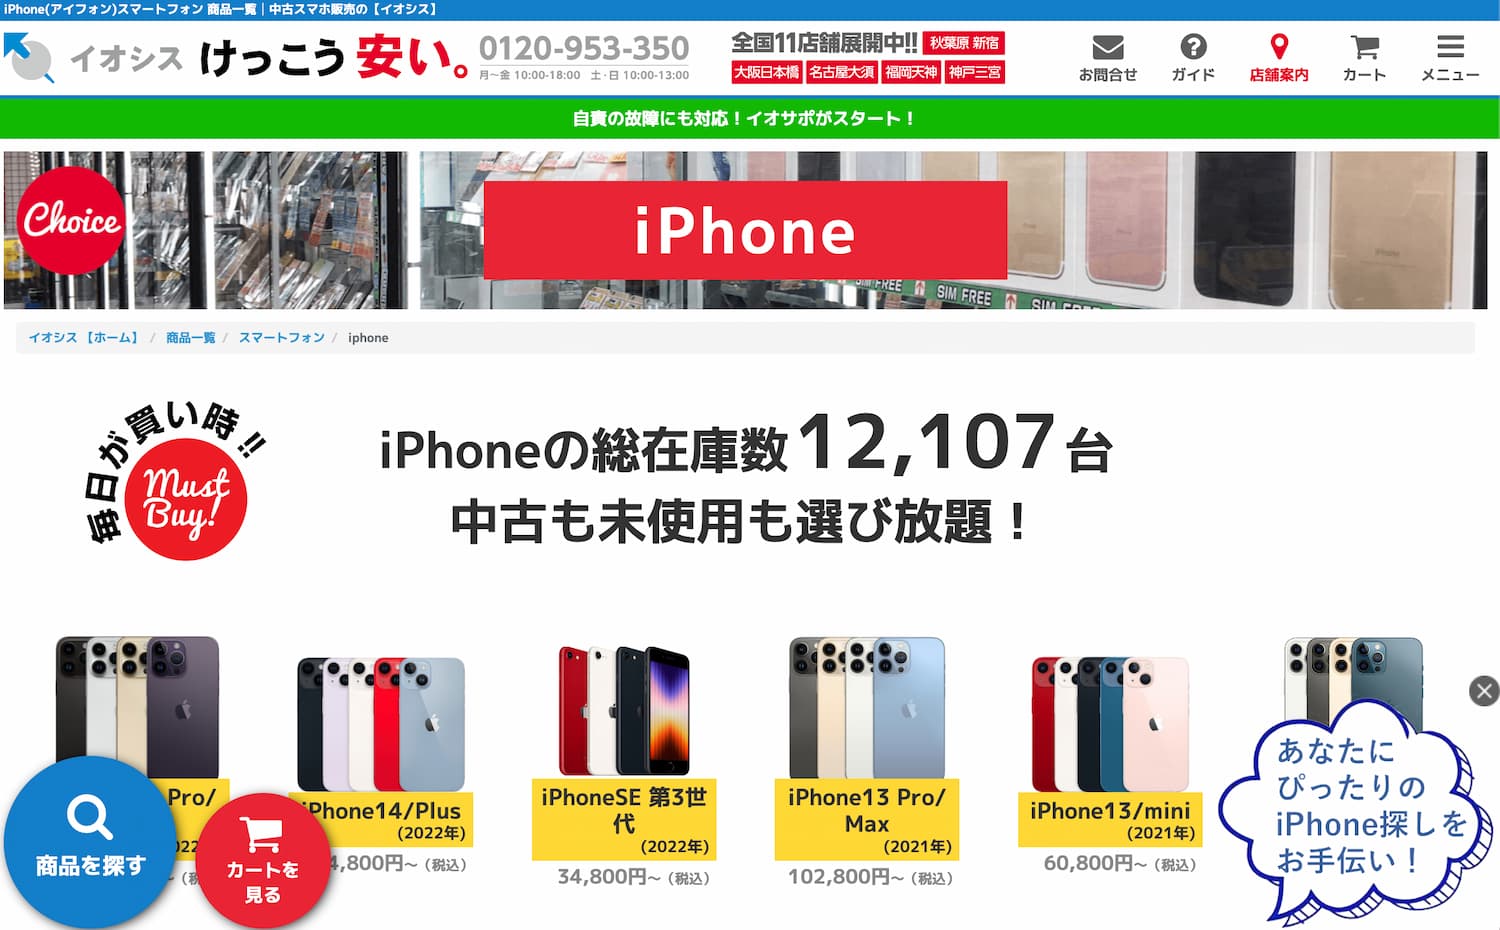 イオシス香港版中古iPhone購入販売サイト